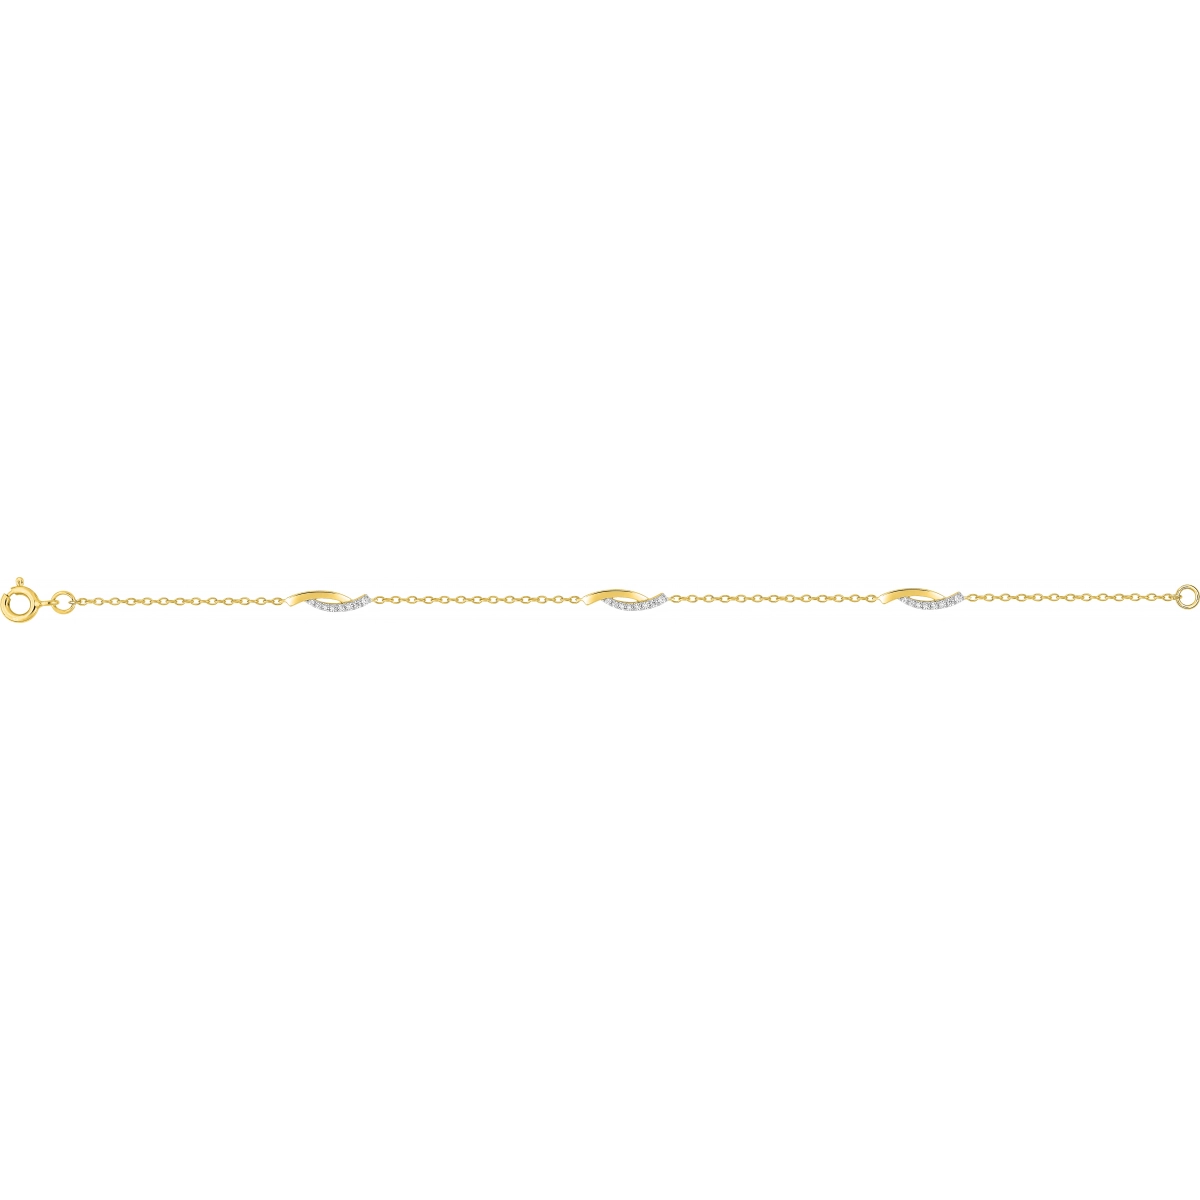 Bracelet w. cz gold plated Brass  Lua Blanca  BSBZ61Z18.0